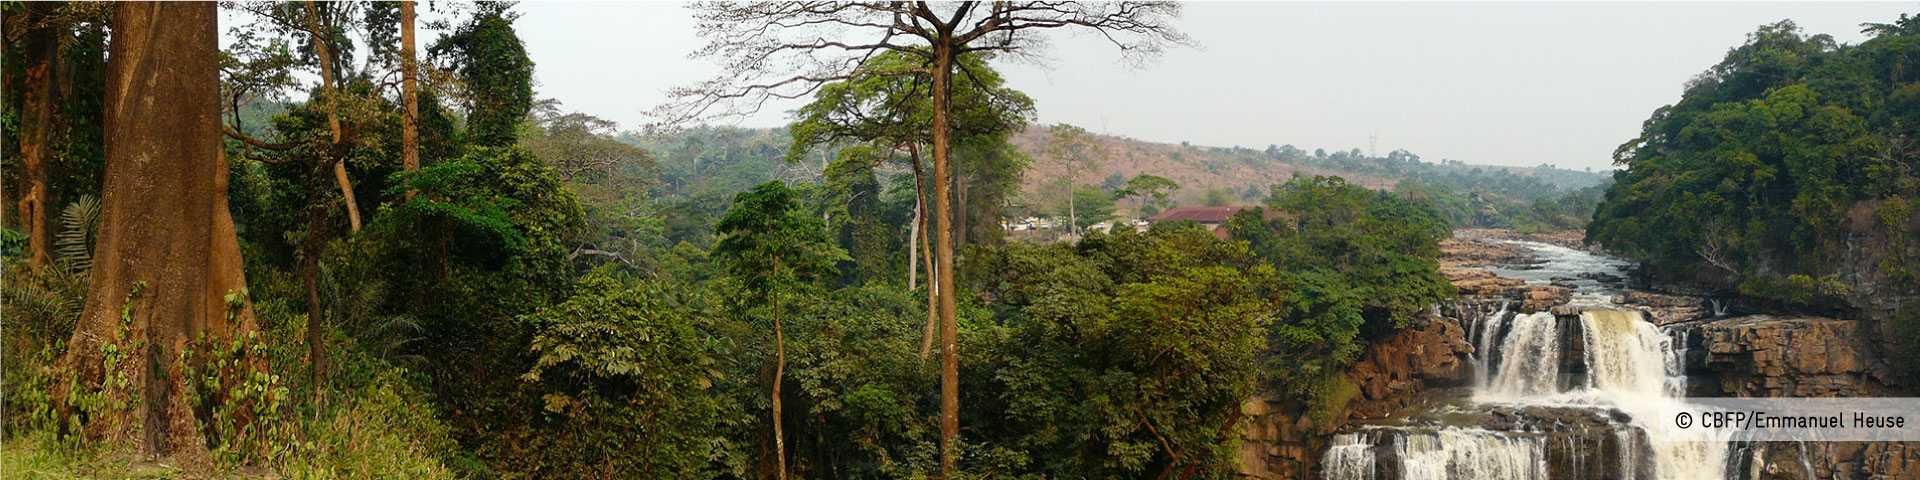 Paysage vallonné du bassin du Congo traversé par la forêt tropicale et une cascade.